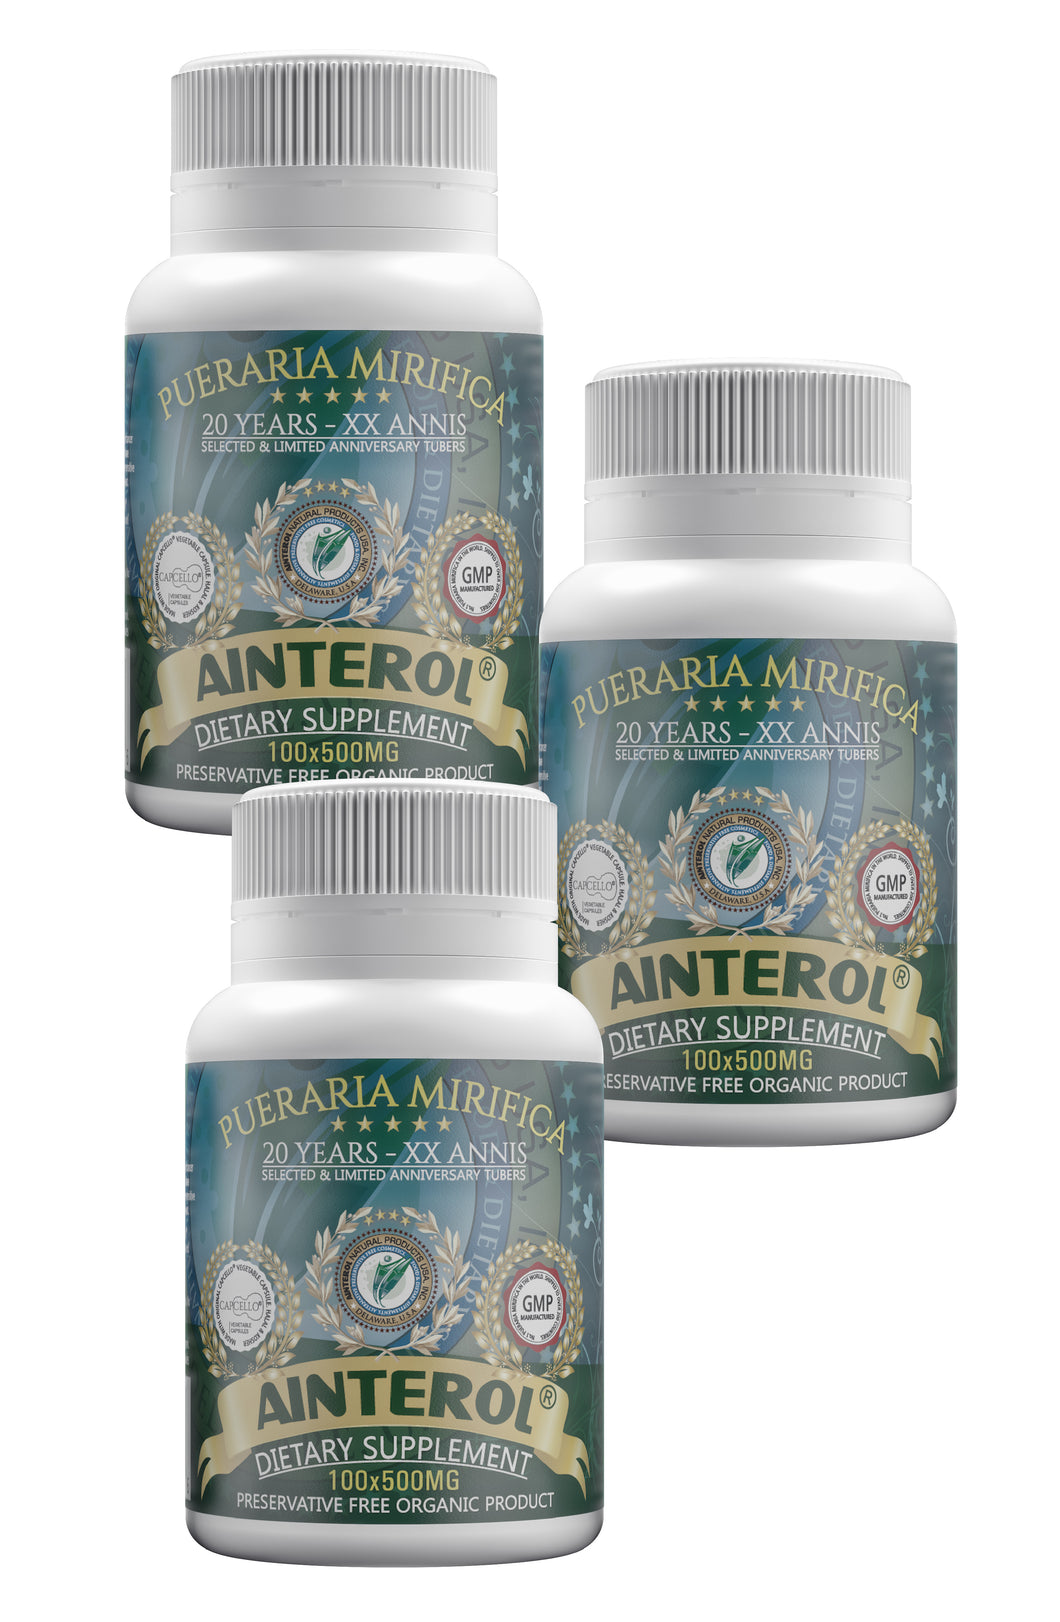 AINTEROL® Pueraria Mirifica 20 Years - XX Annis 500mg (300caps)